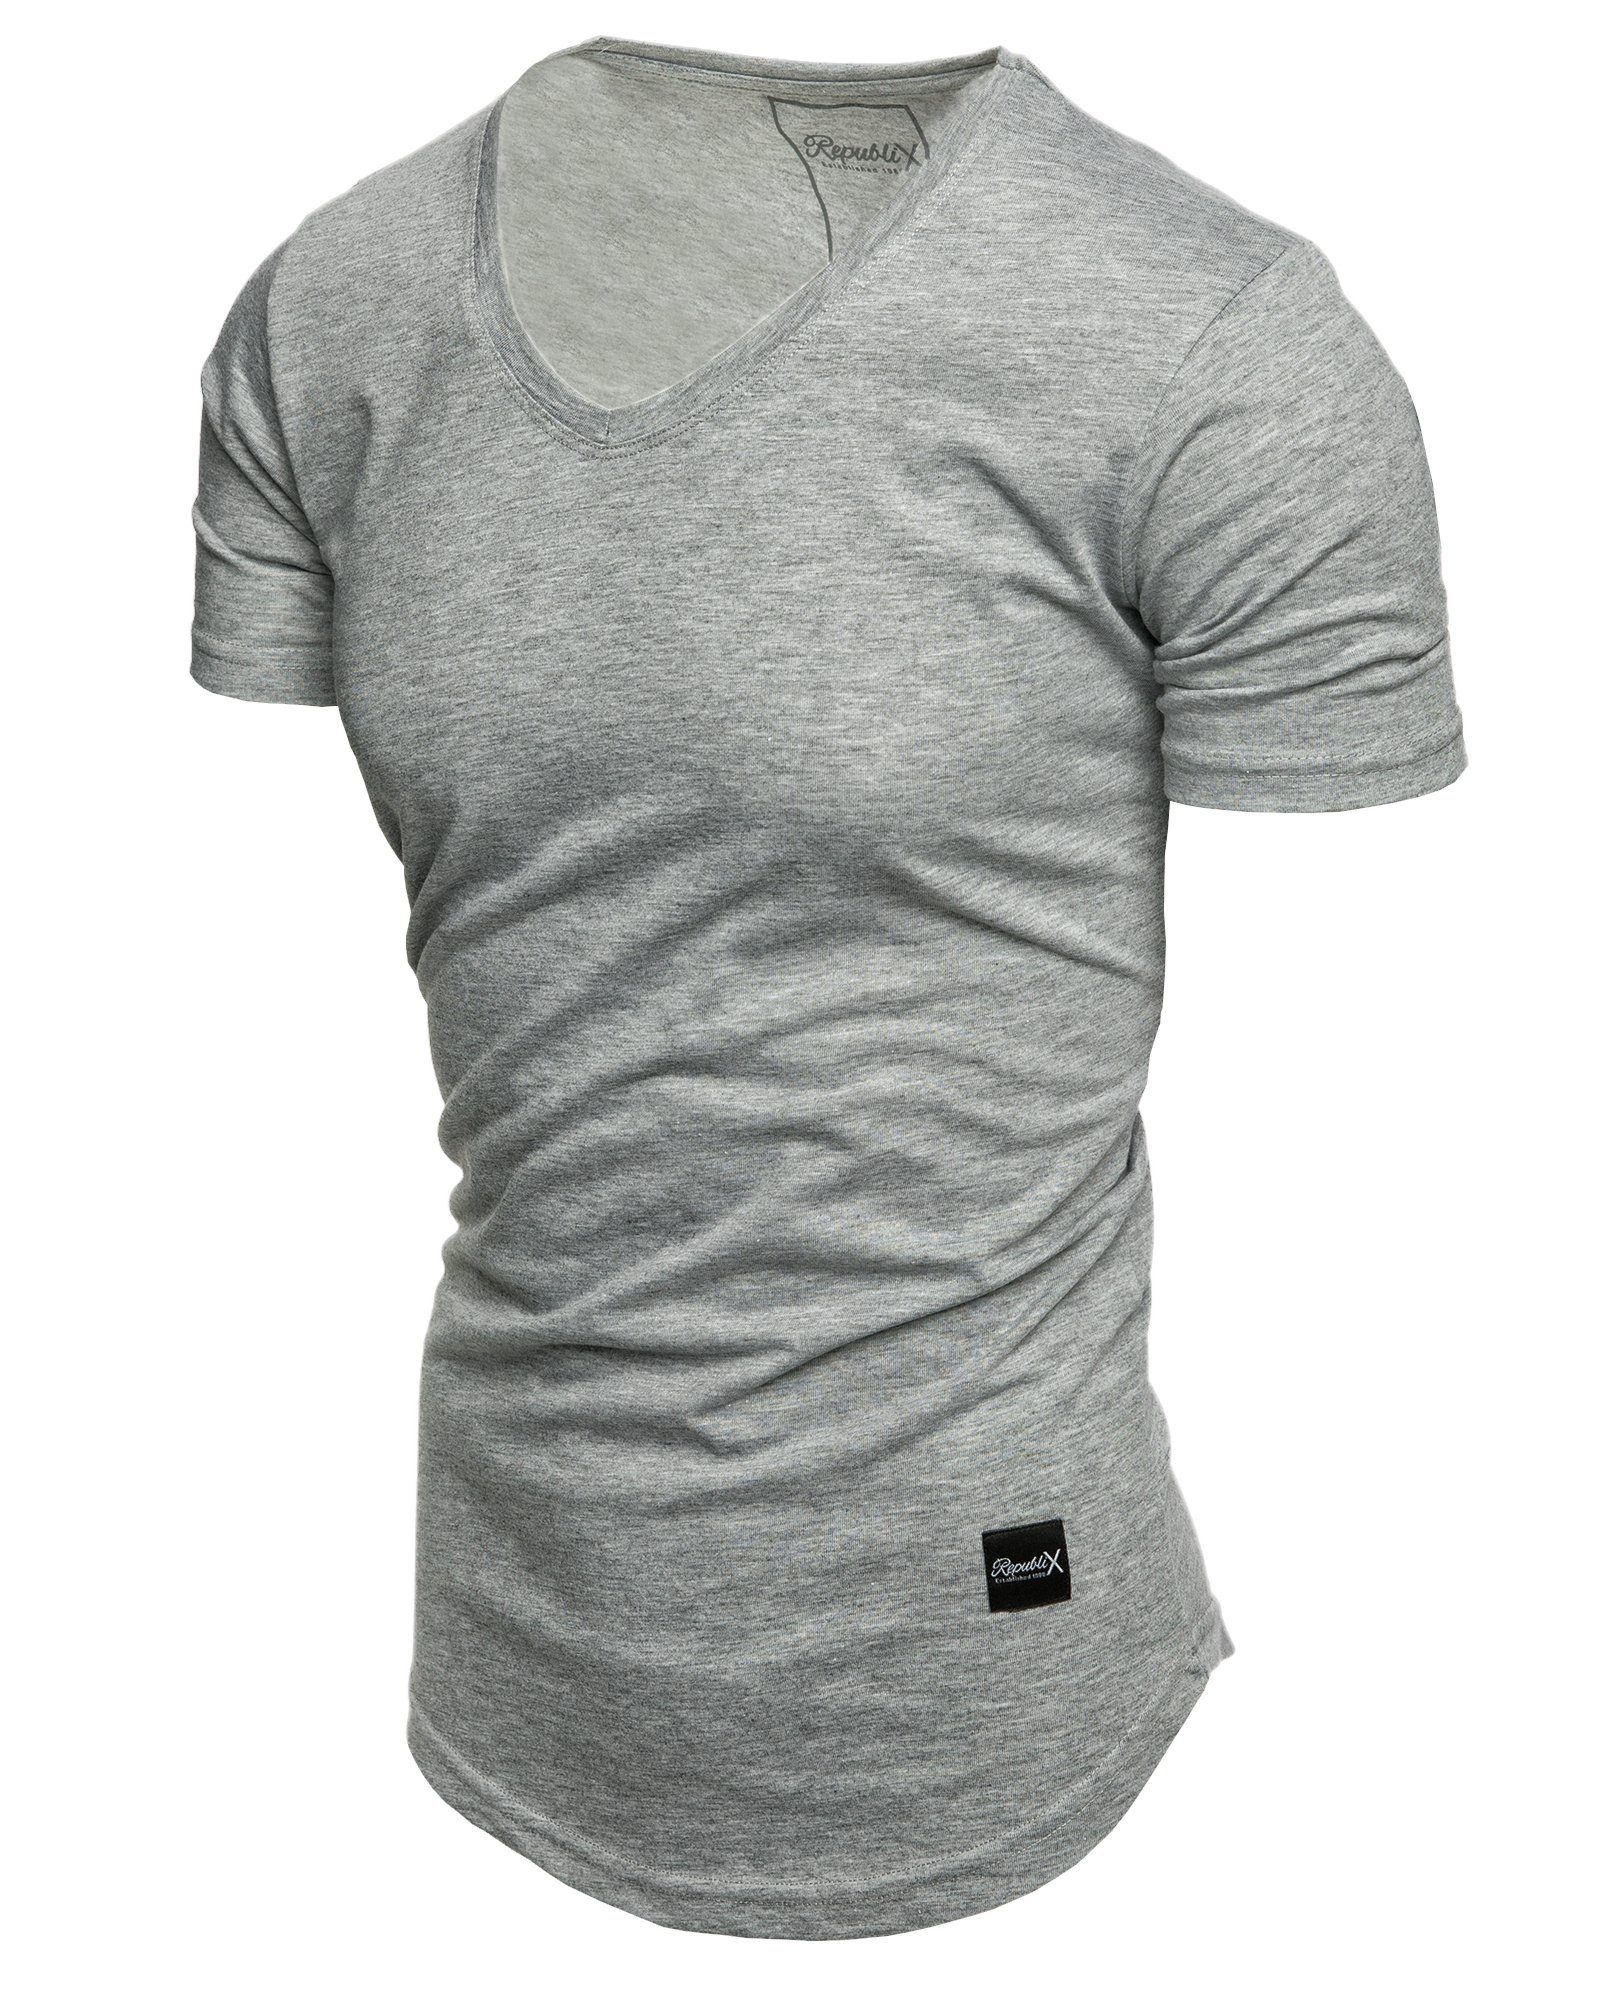 REPUBLIX T-Shirt BRANDON Herren Oversize Shirt Grau Melange V-Ausschnitt Basic mit